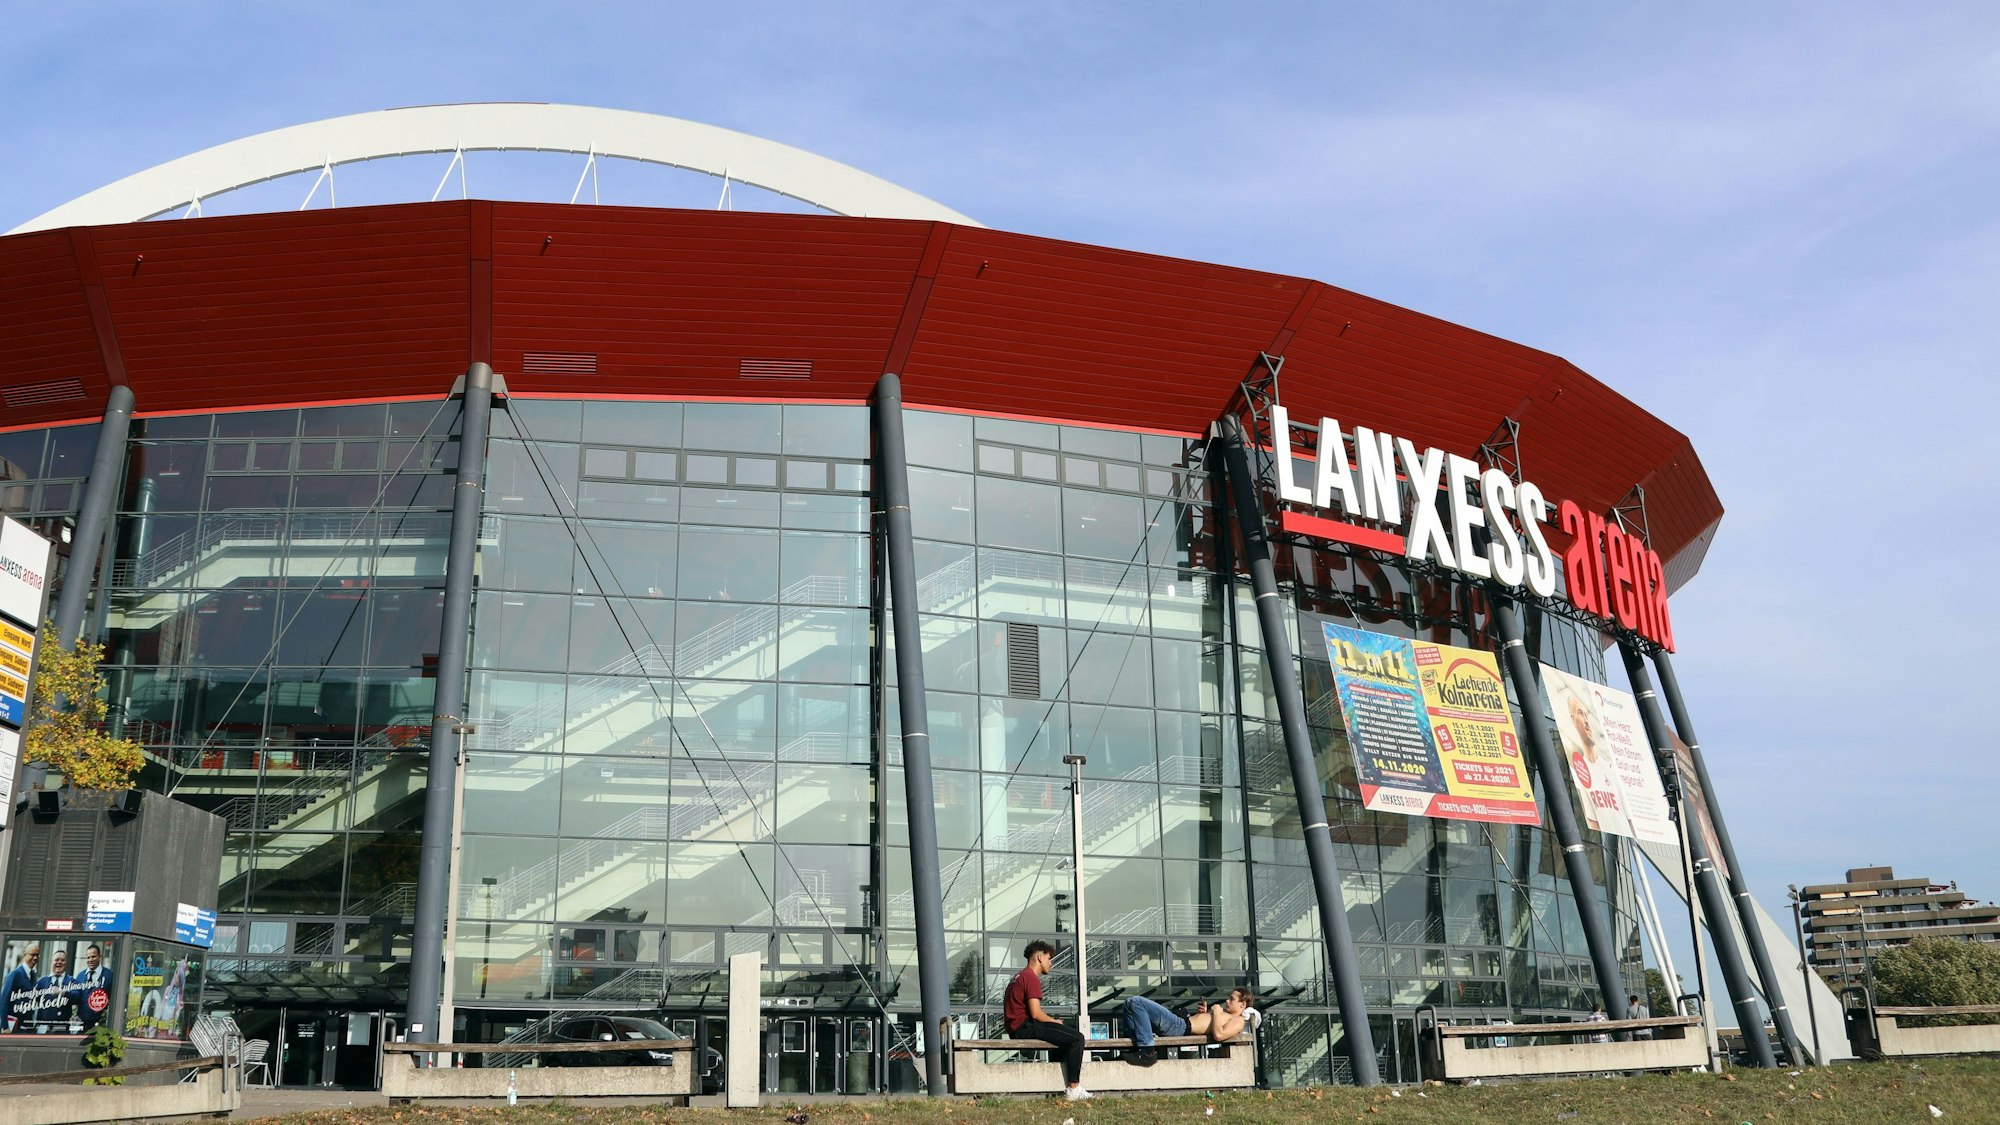 Außenansicht der Lanxess-Arena in Köln.